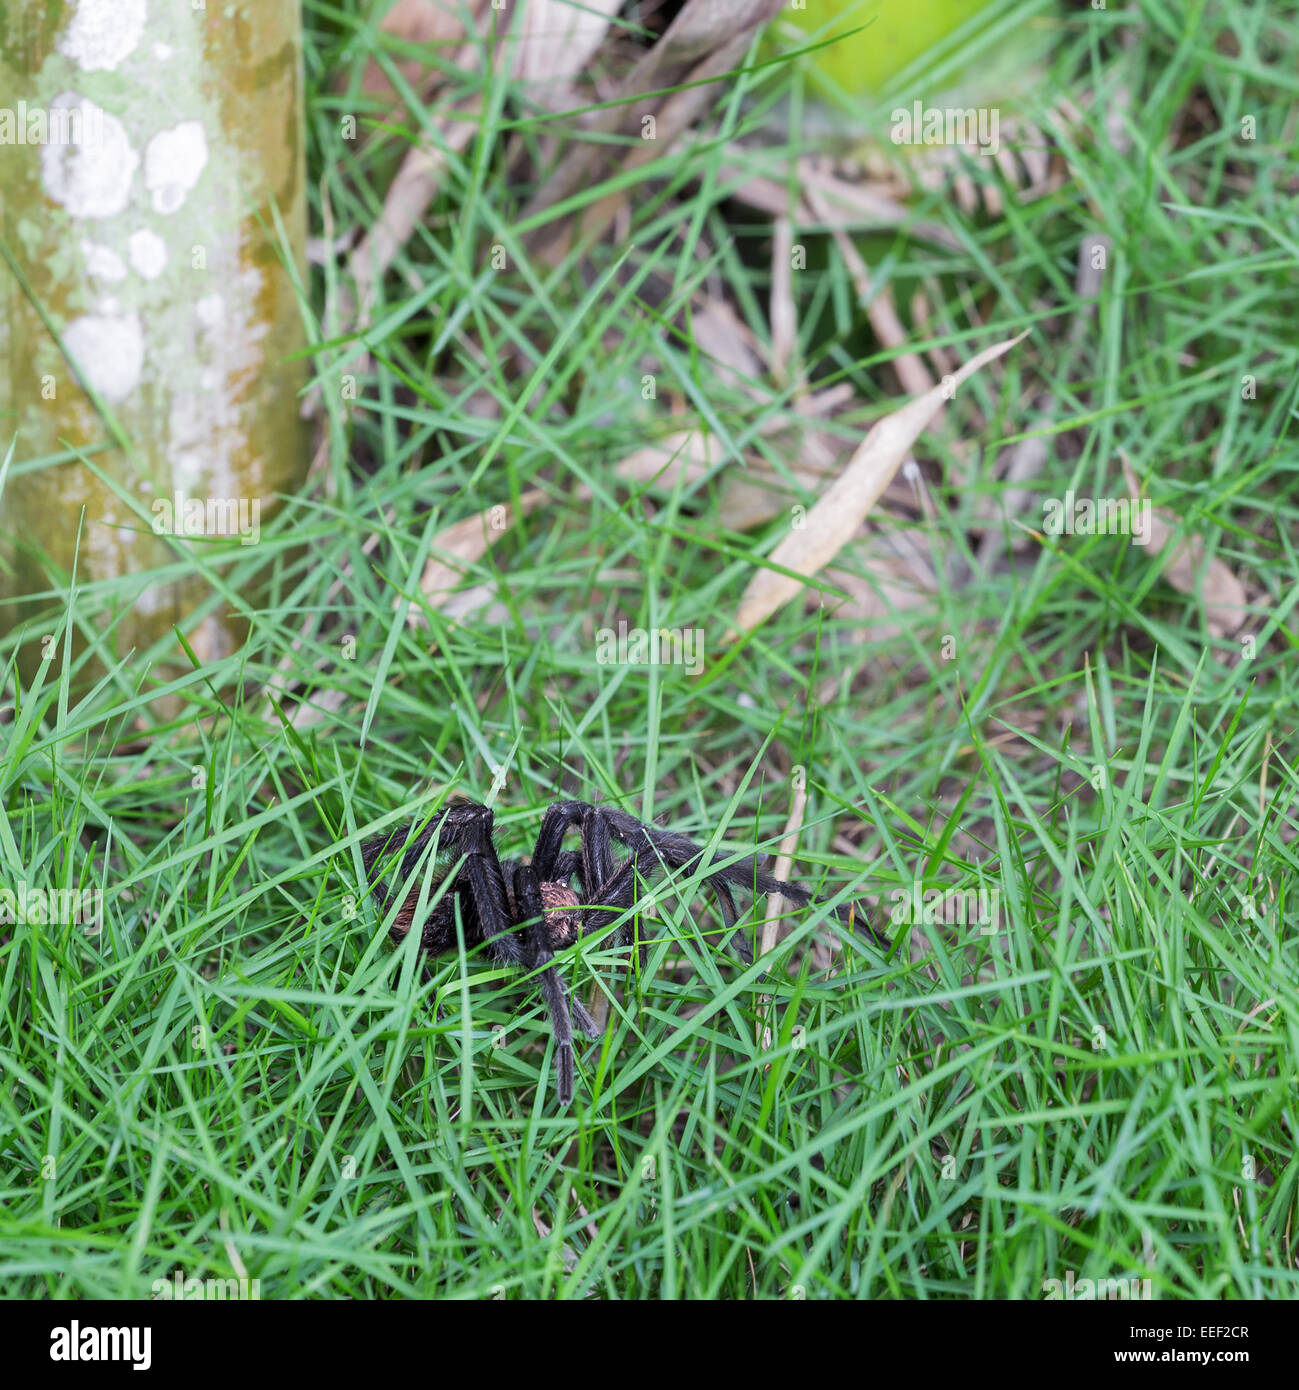 Brown Aphonopelma tarantula at the garden Stock Photo